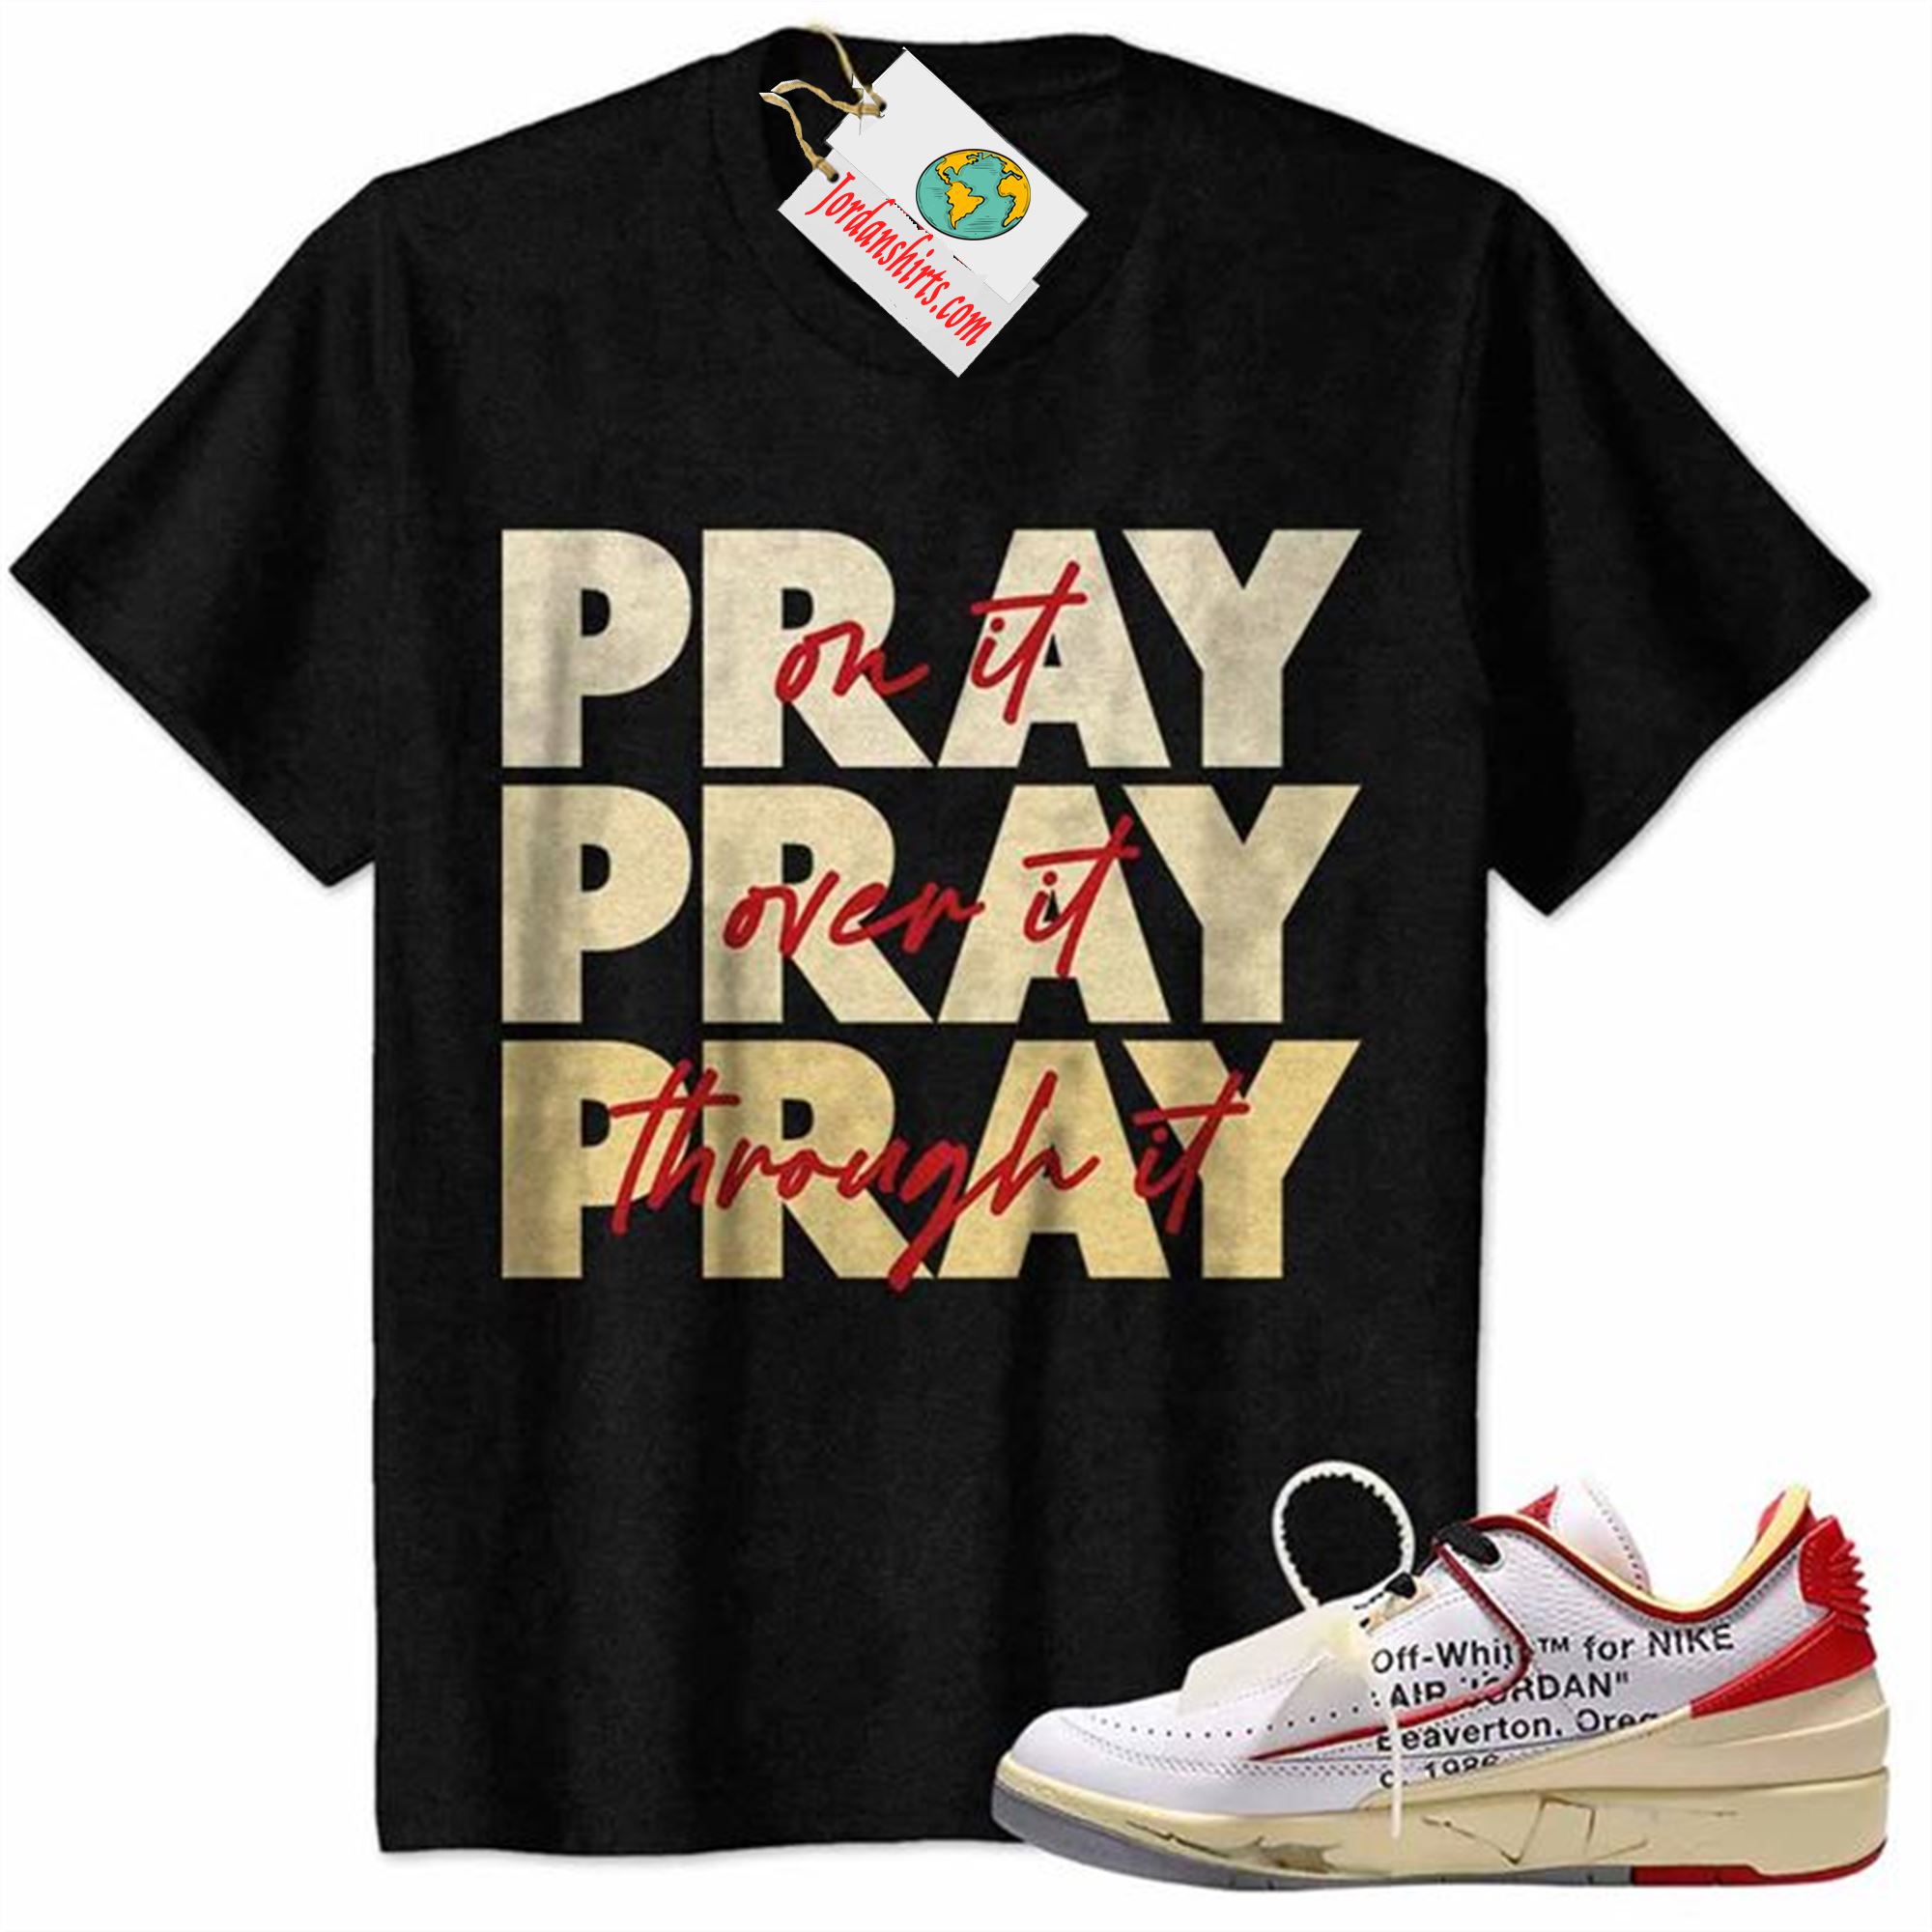 Jordan 2 Shirt, Pray On It Pray Over It Pray Through It Black Air Jordan 2 Low White Red Off-white 2s Full Size Up To 5xl